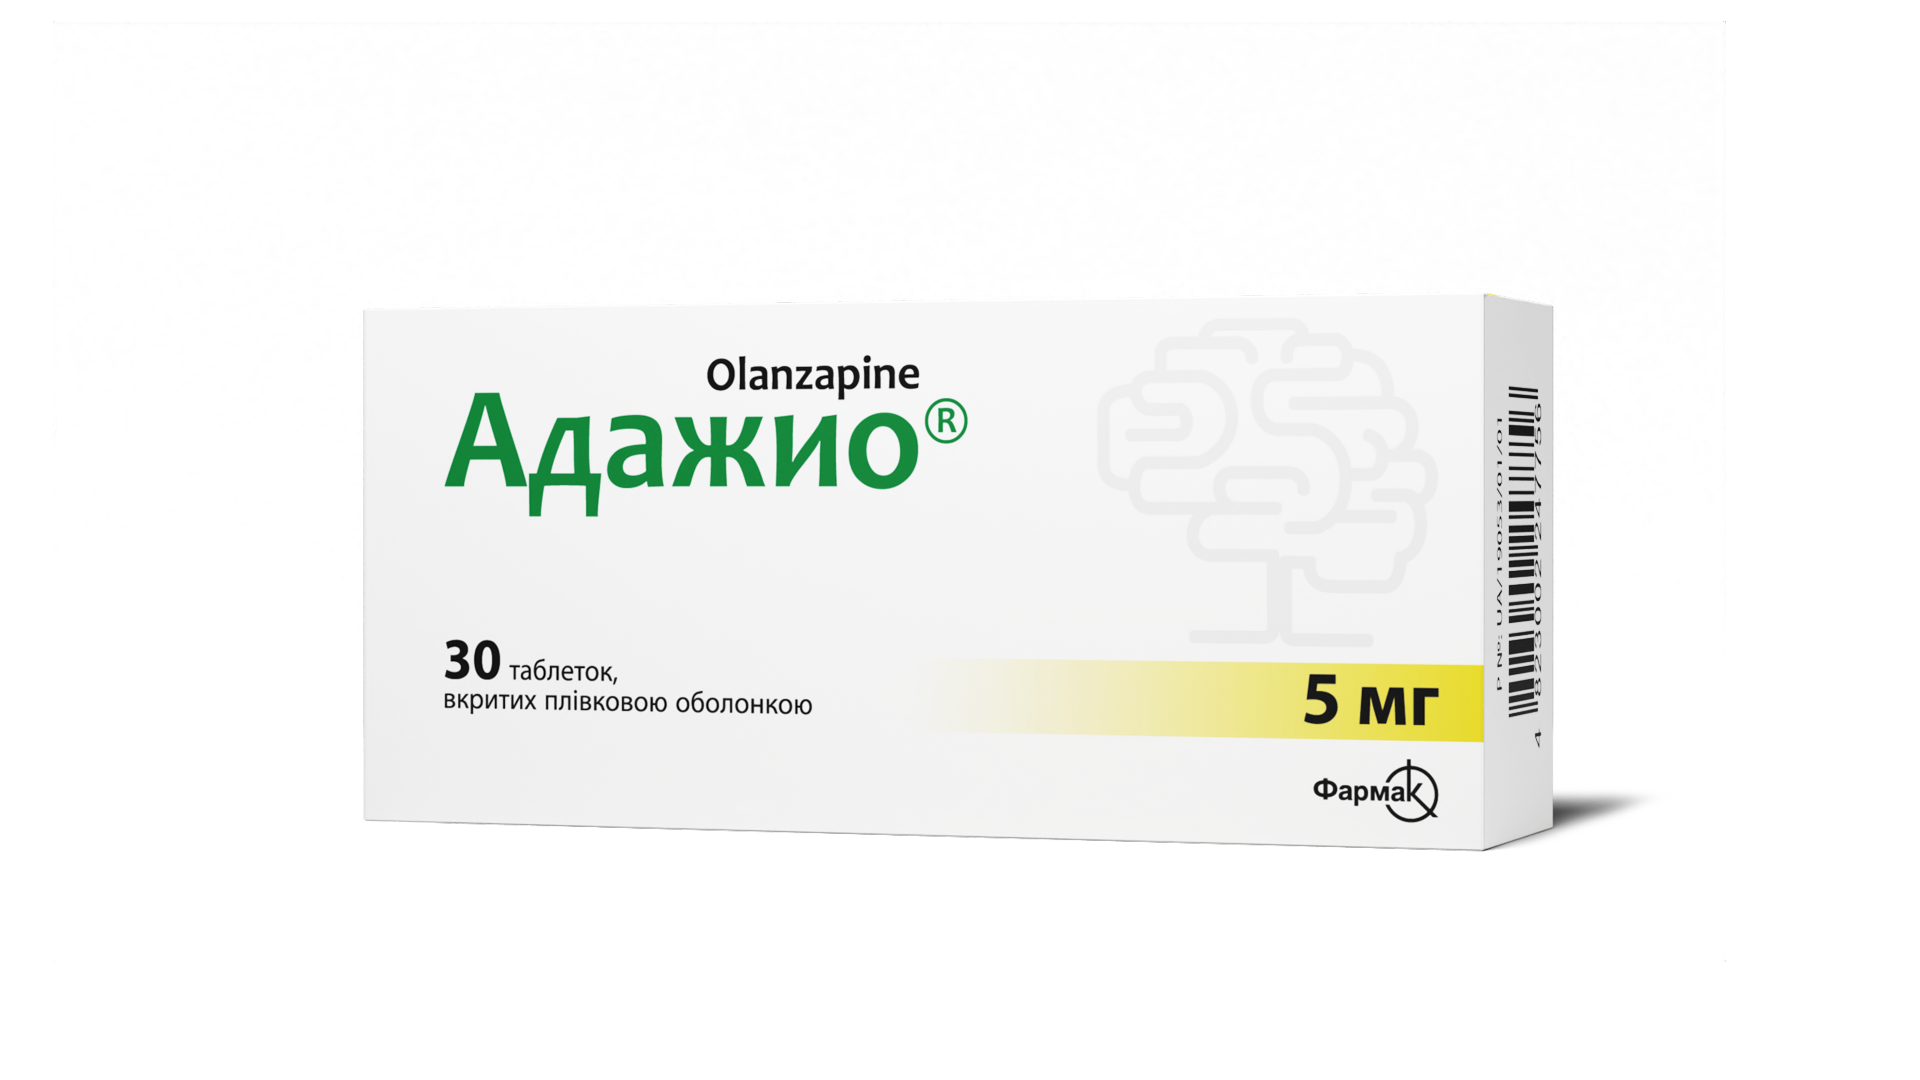 Адажио® 5 мг (1)